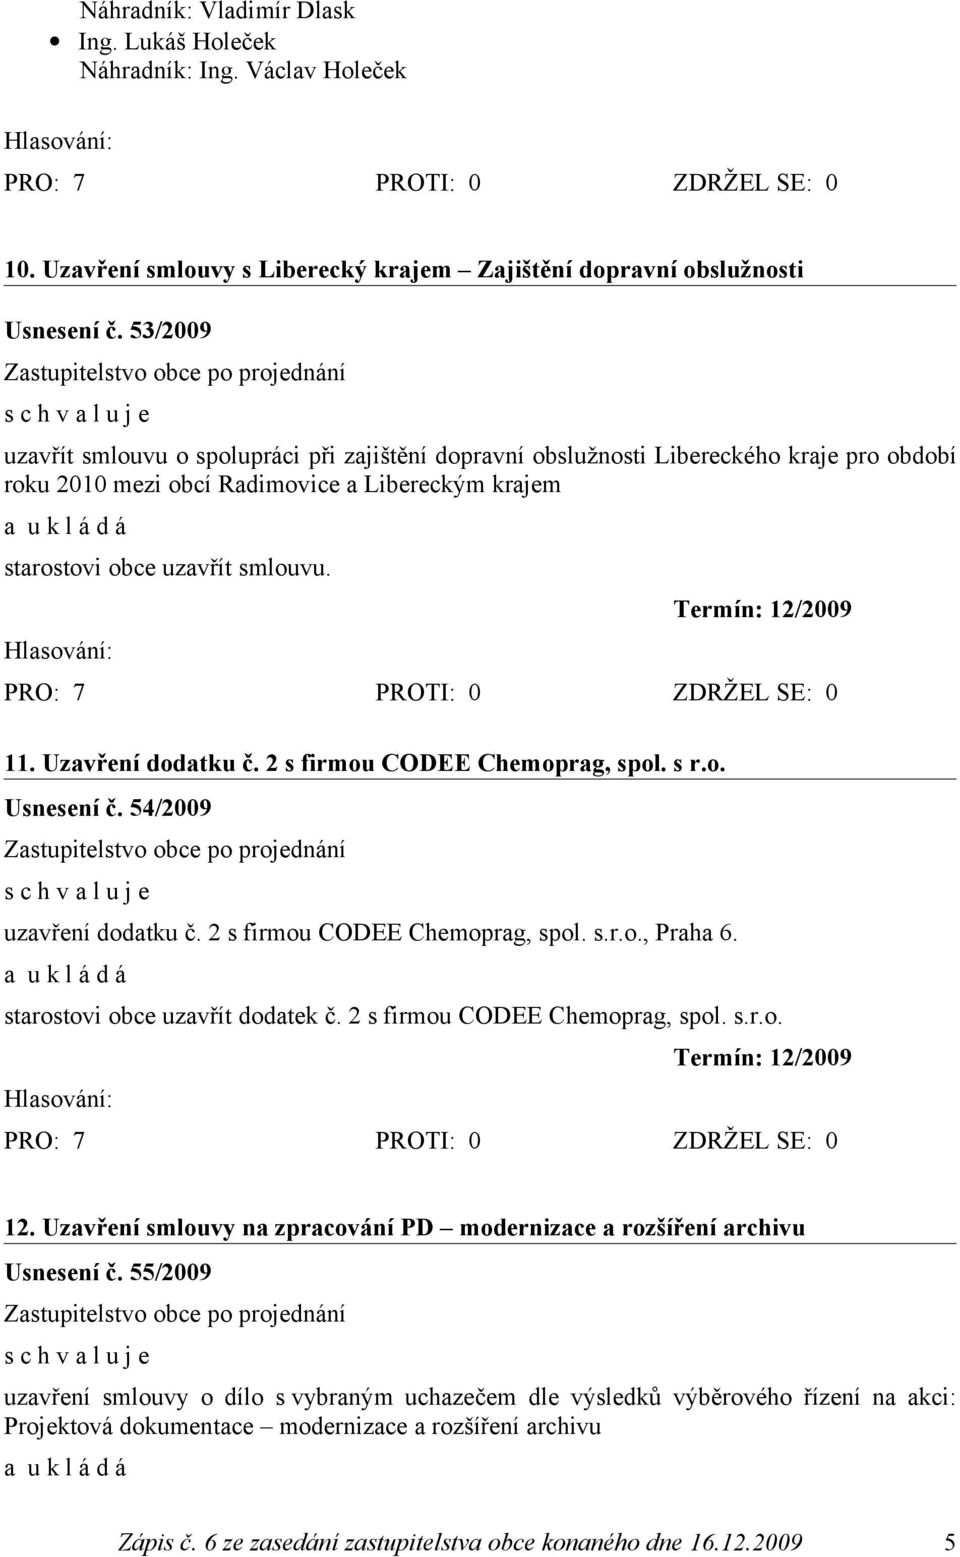 Termín: 12/2009 11. Uzavření dodatku č. 2 s firmou CODEE Chemoprag, spol. s r.o. Usnesení č. 54/2009 uzavření dodatku č. 2 s firmou CODEE Chemoprag, spol. s.r.o., Praha 6.